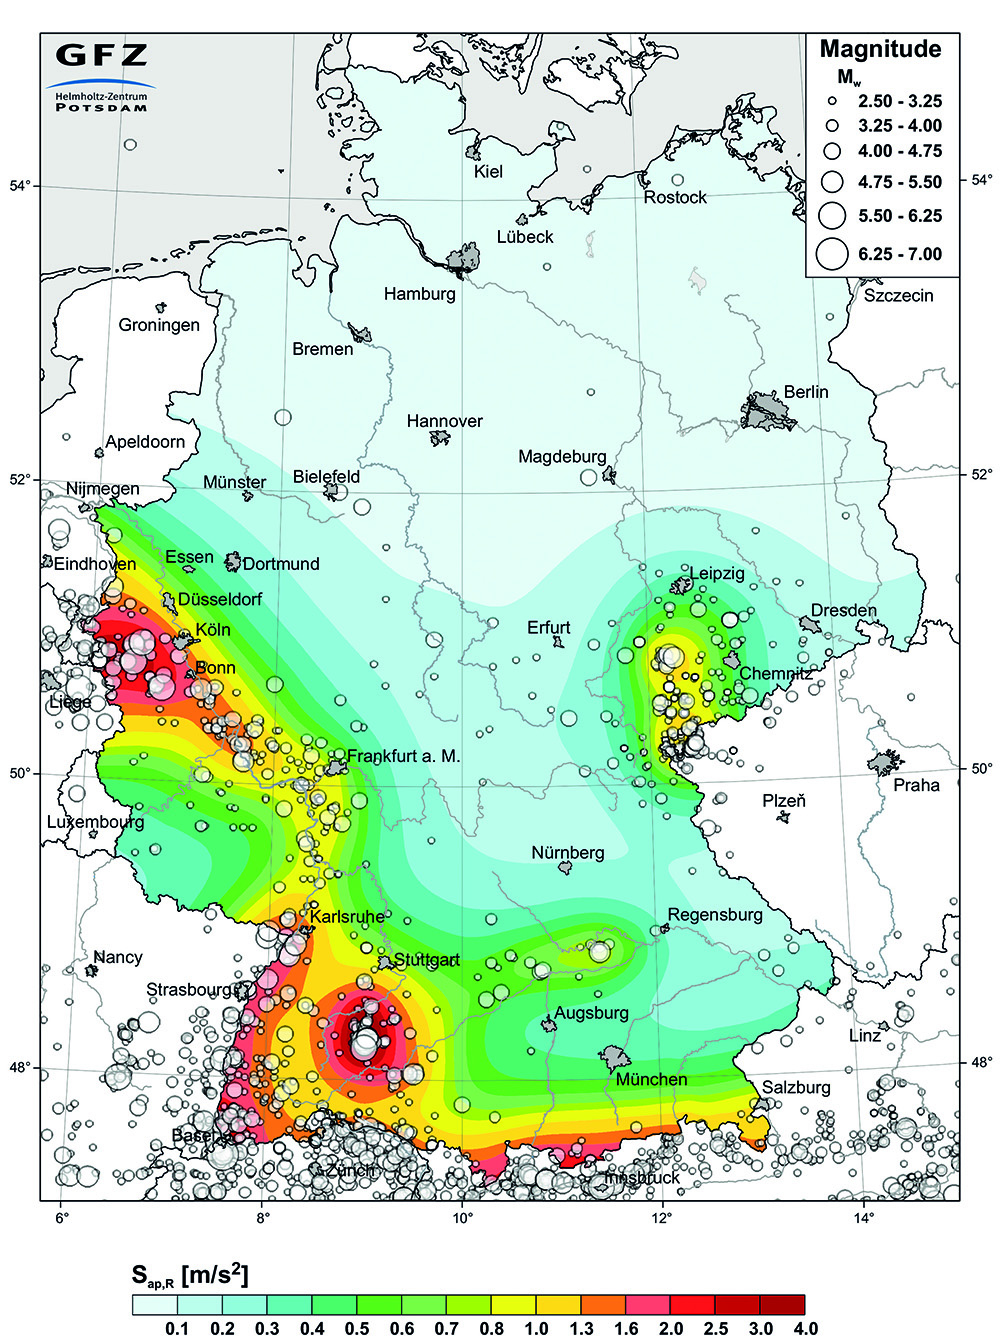 © Karte der Erdbebengefährdung für Deutschland. Grafik: G. Grünthal et al.,  Helmholtz-Zentrum Potsdam - Deutsches GeoForschungsZentrum.